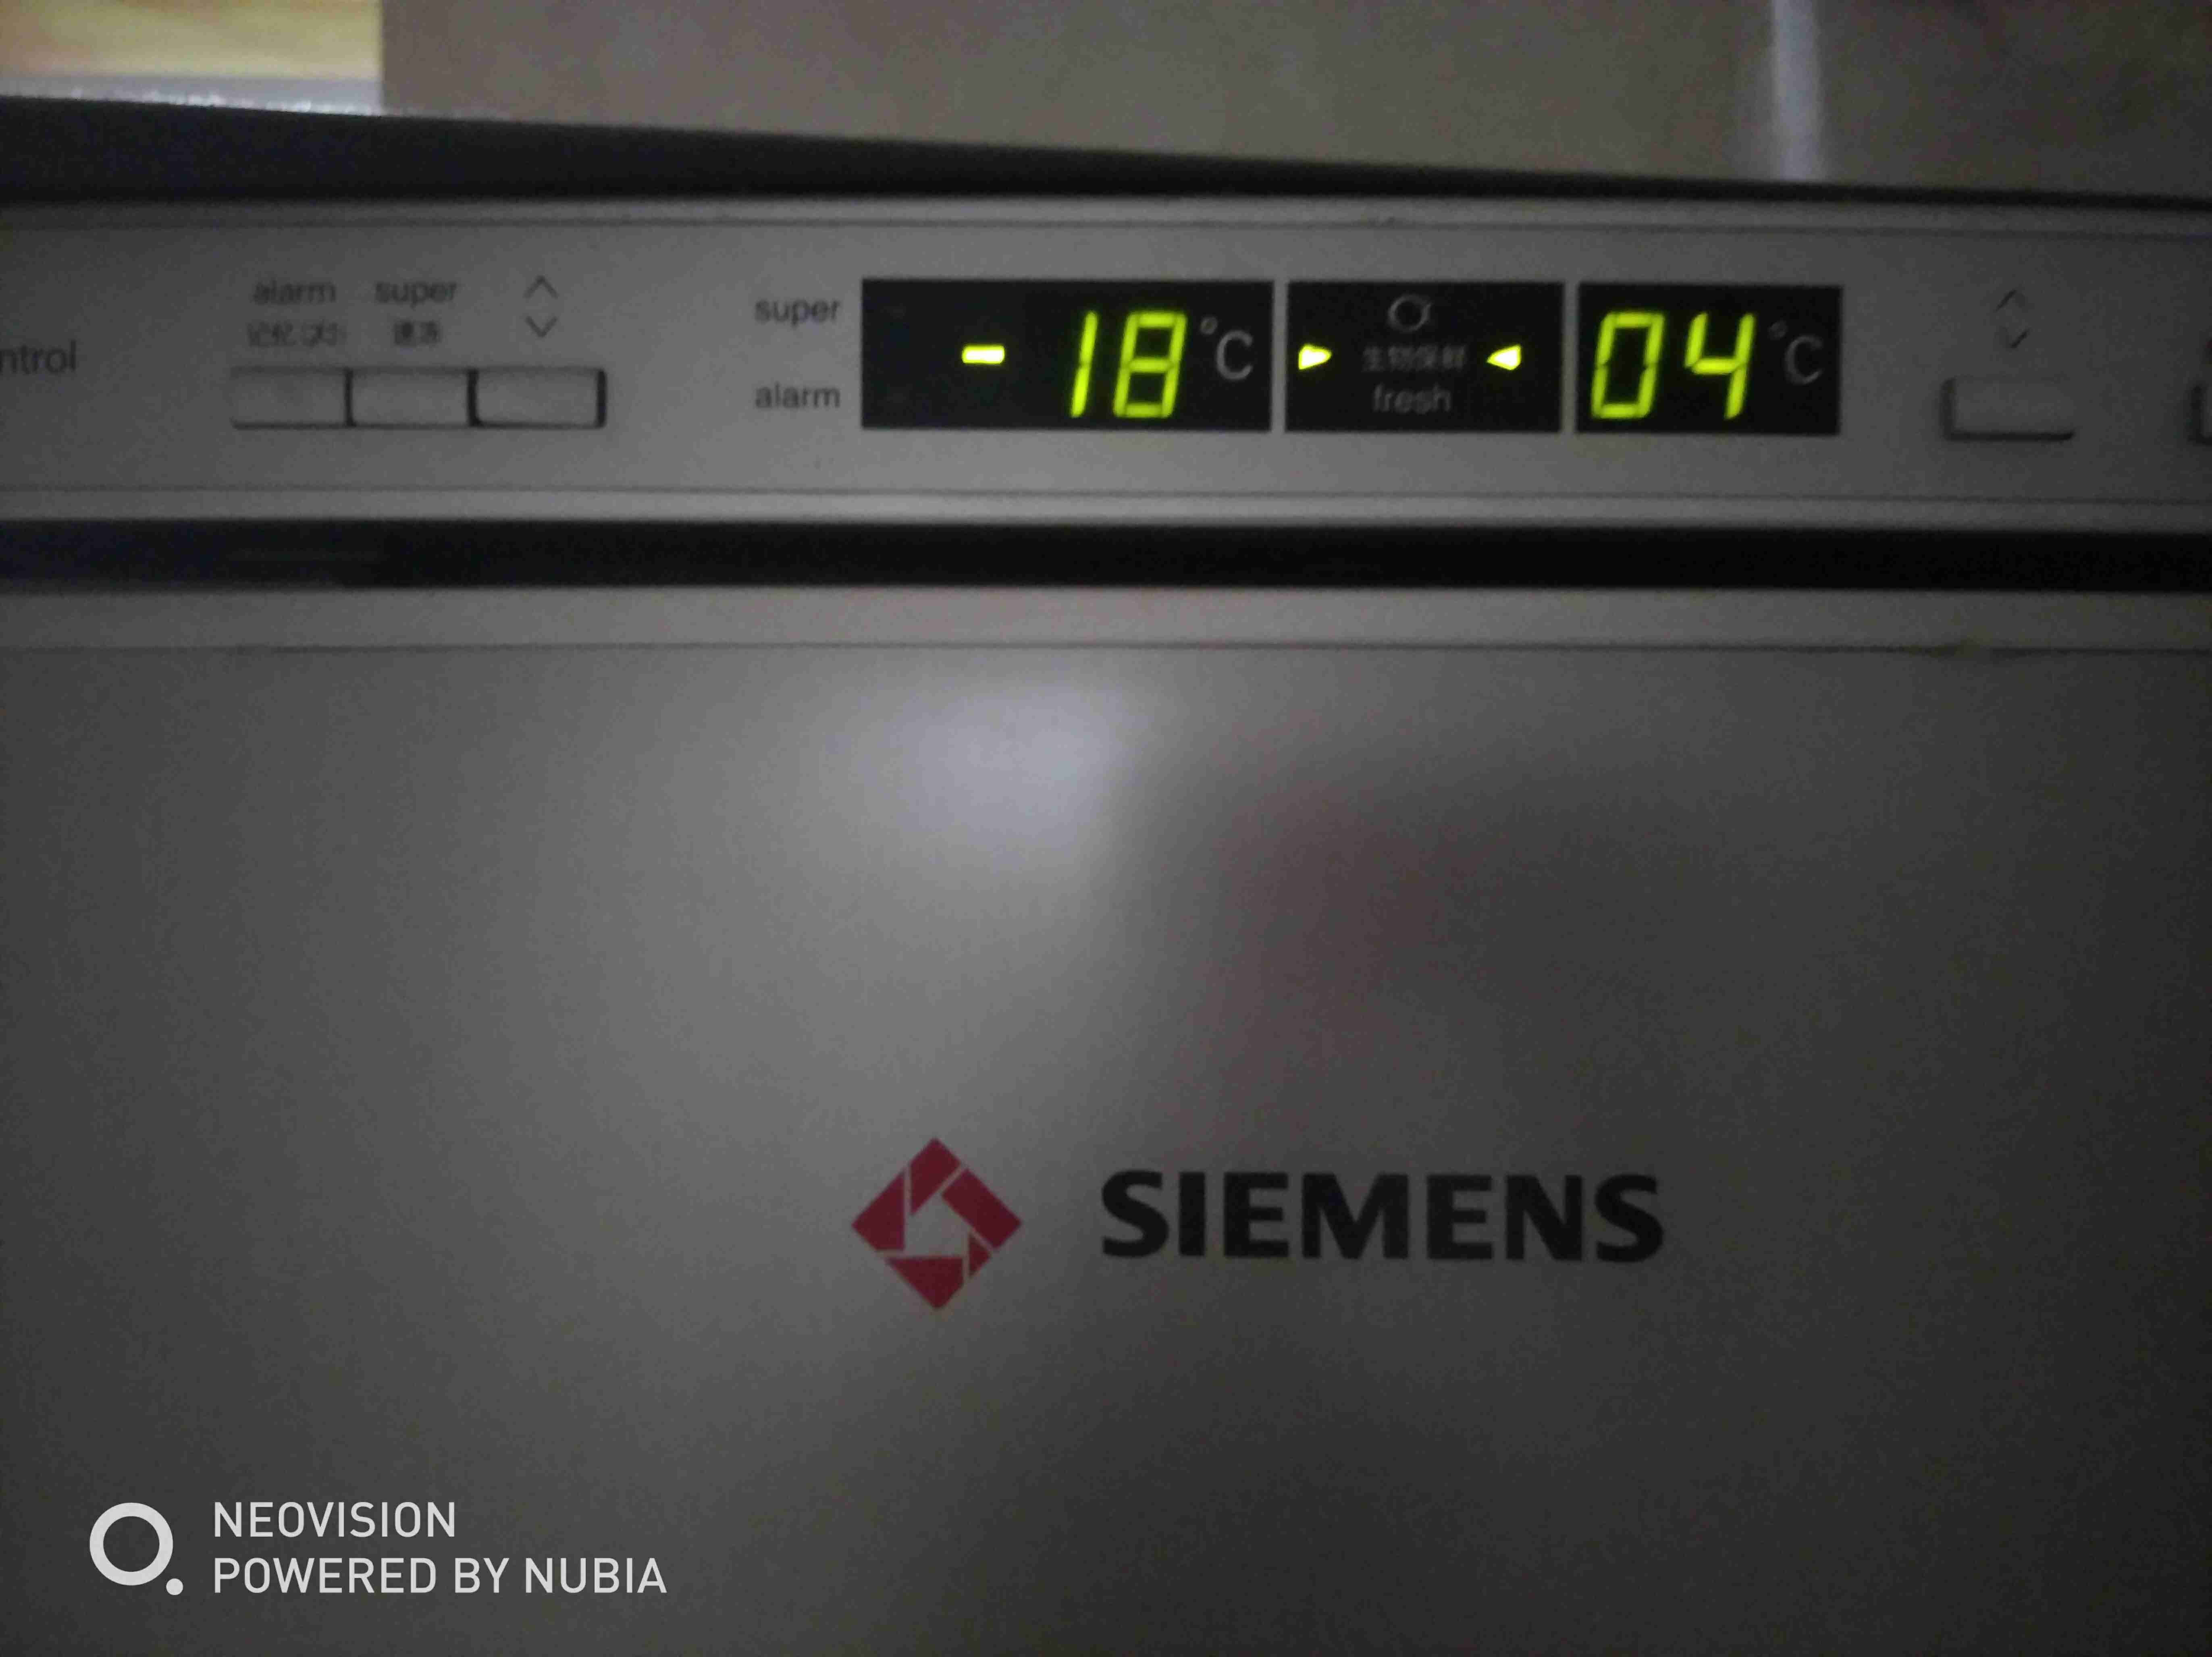 关于西门子刻kk22F57TI的温度设置？？ 冰箱的冷冻室温度显示-18度，但是数字一直在闪烁跳动，不是警报，求